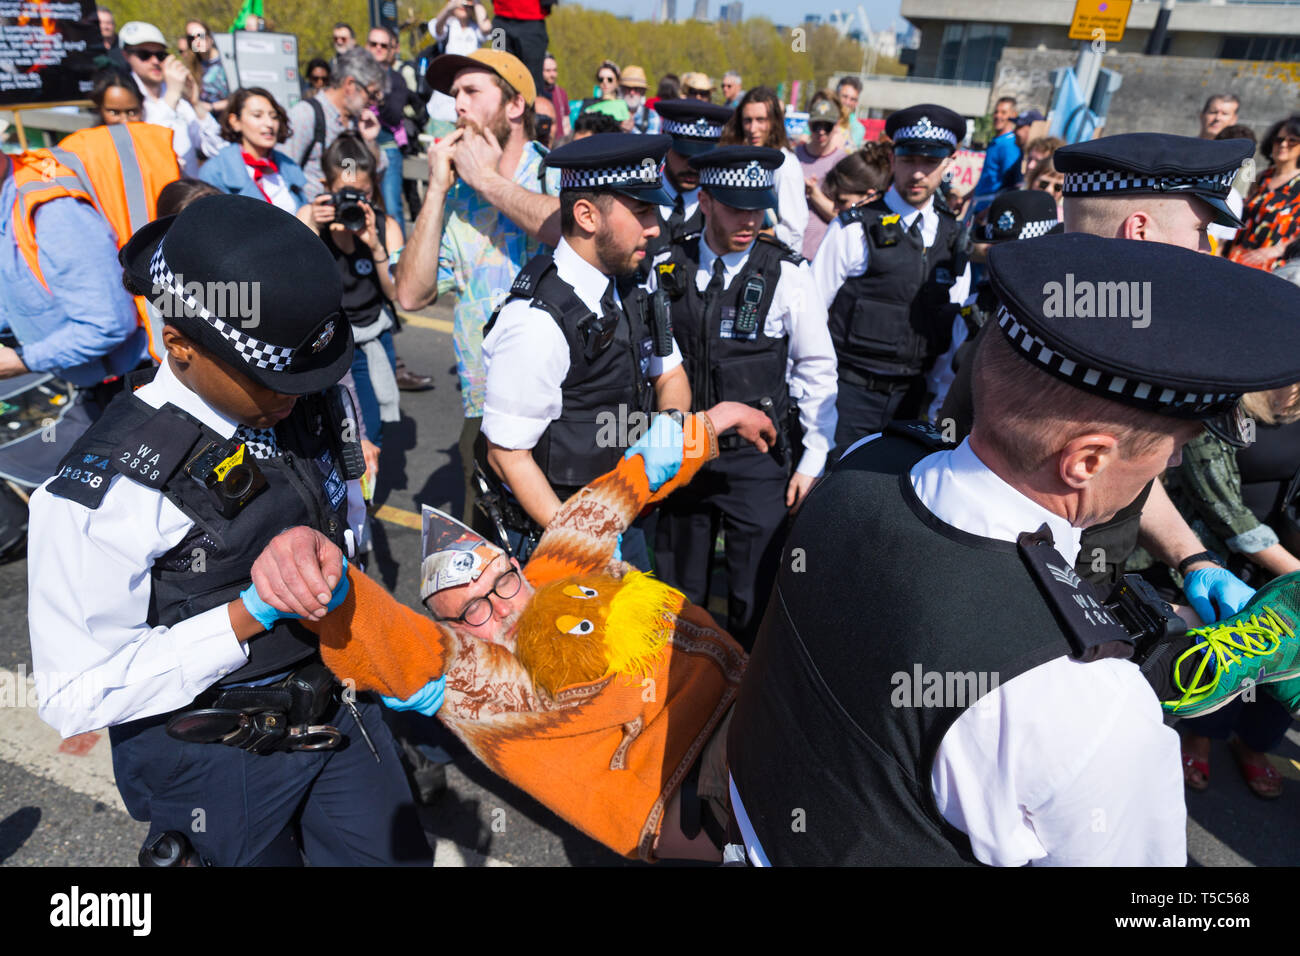 Arrestation d'un manifestant de la police au camp de rébellion d'extinction sur Waterloo Bridge, Londres Banque D'Images